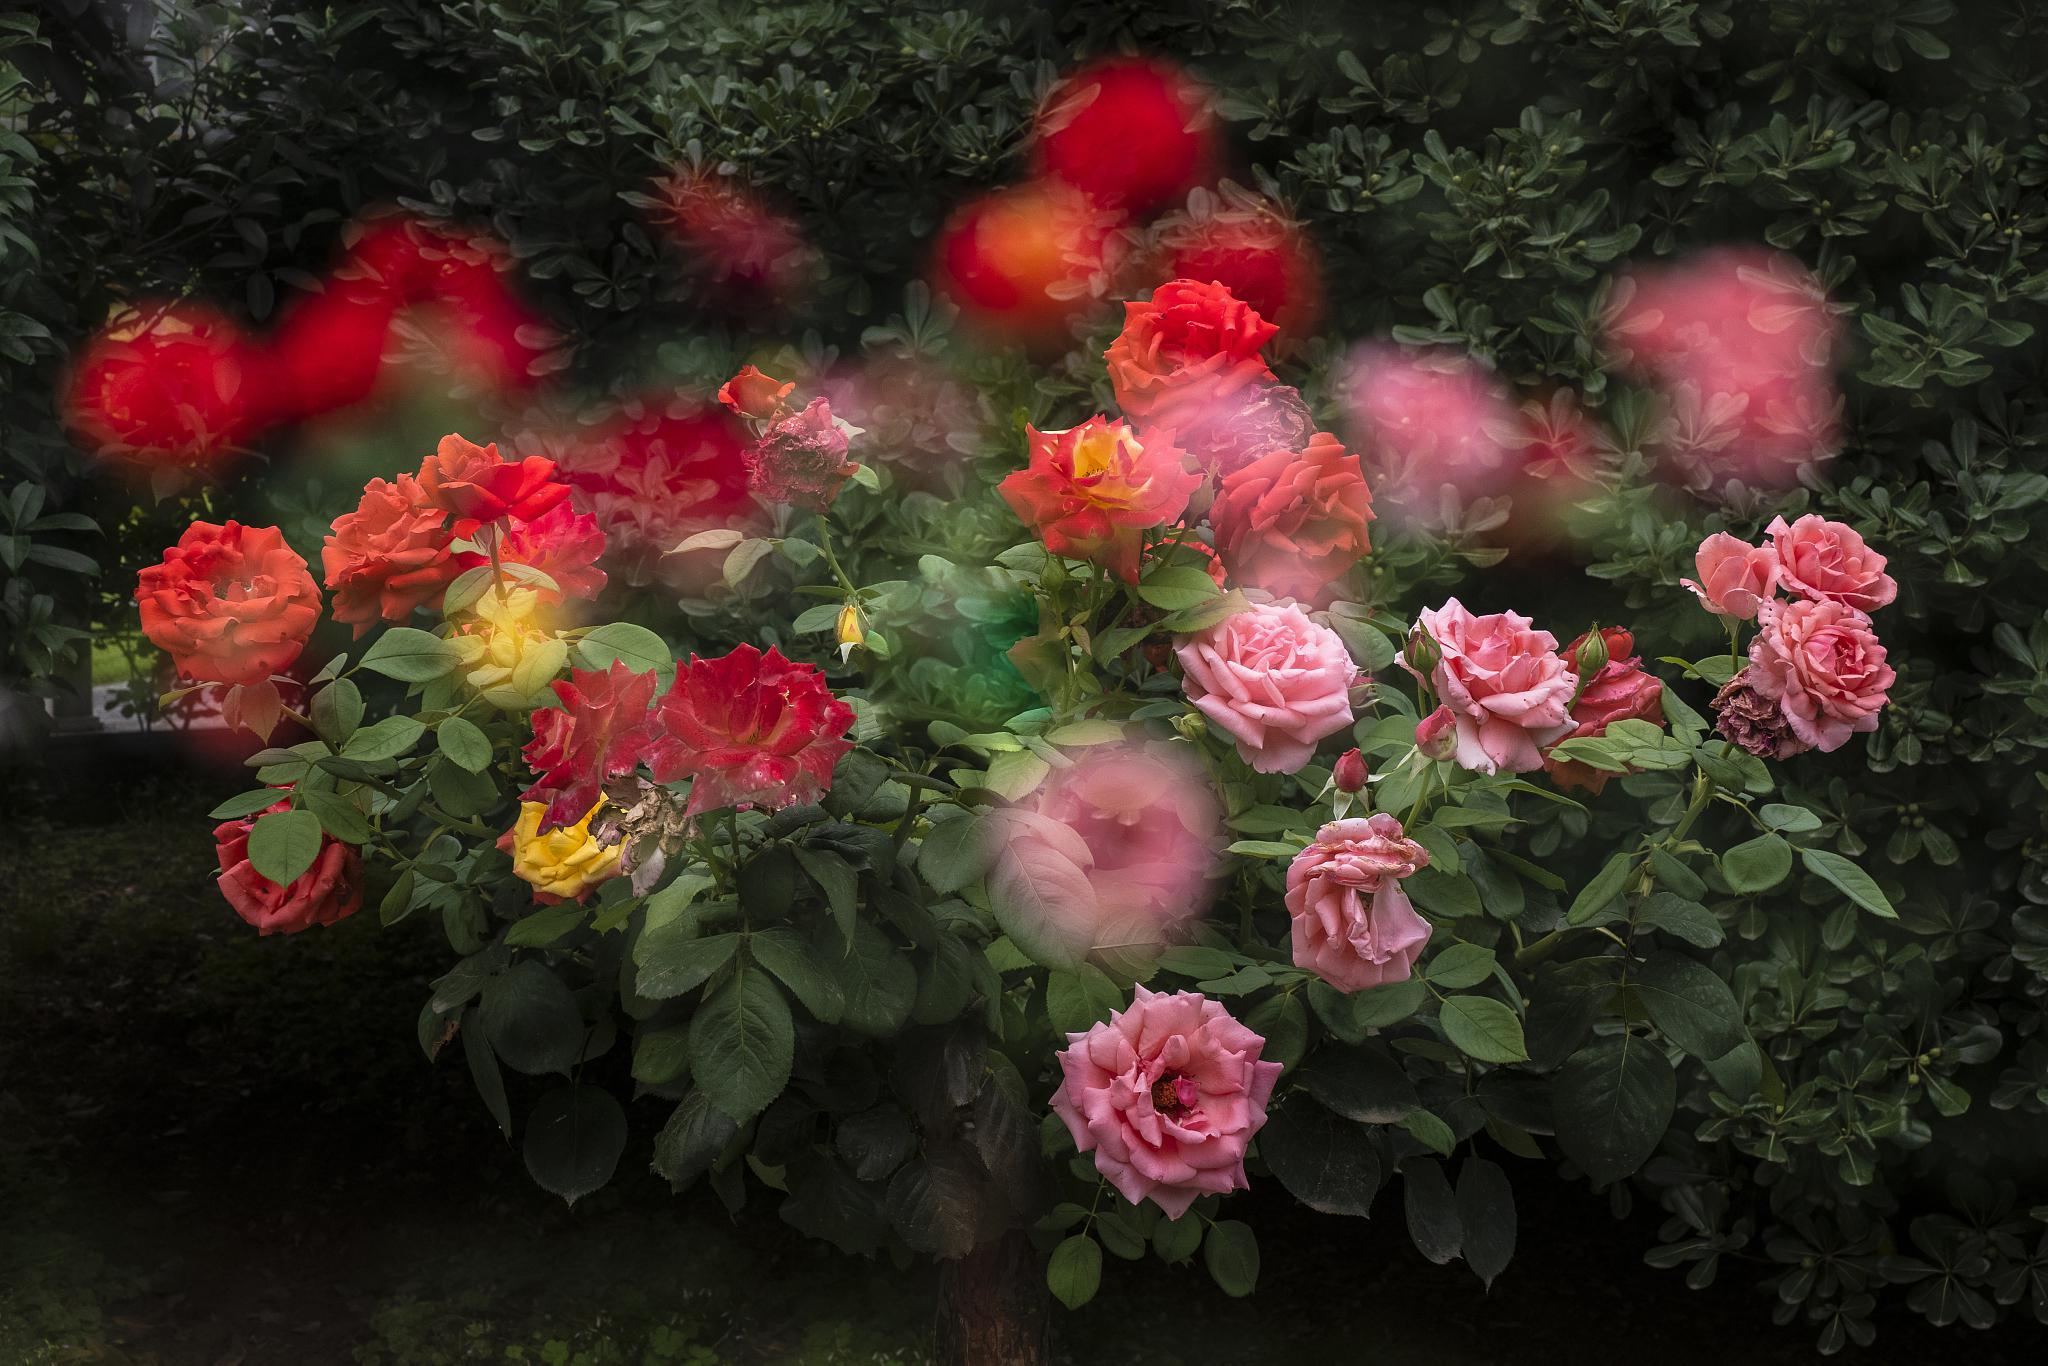 彩虹阳台月季花是一种美丽绽放的花卉,它的色彩缤纷,香气浓郁,生命力